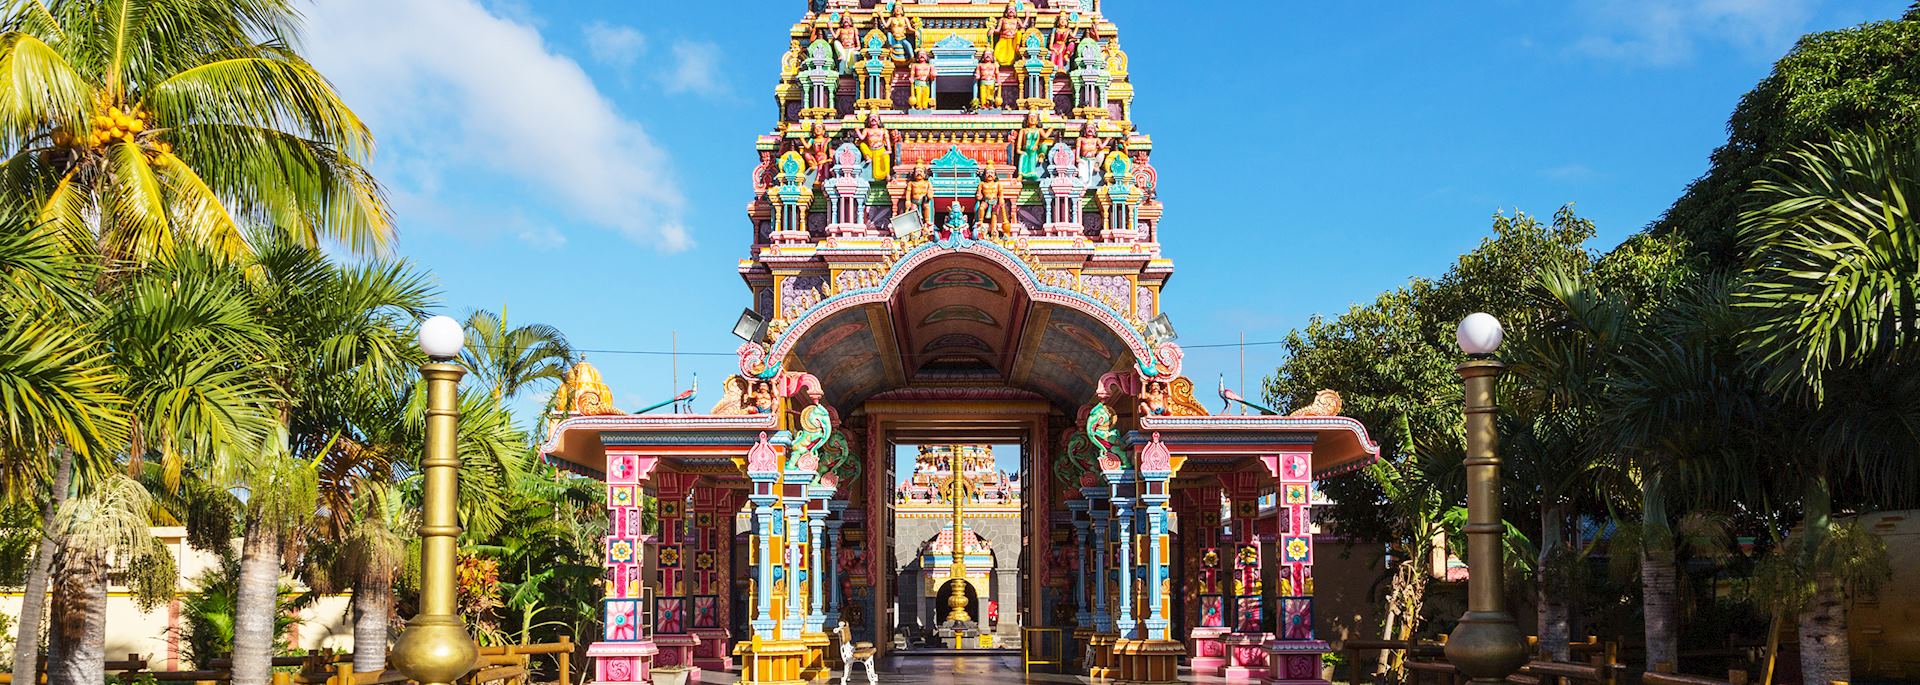 Hindu temple, Mauritius